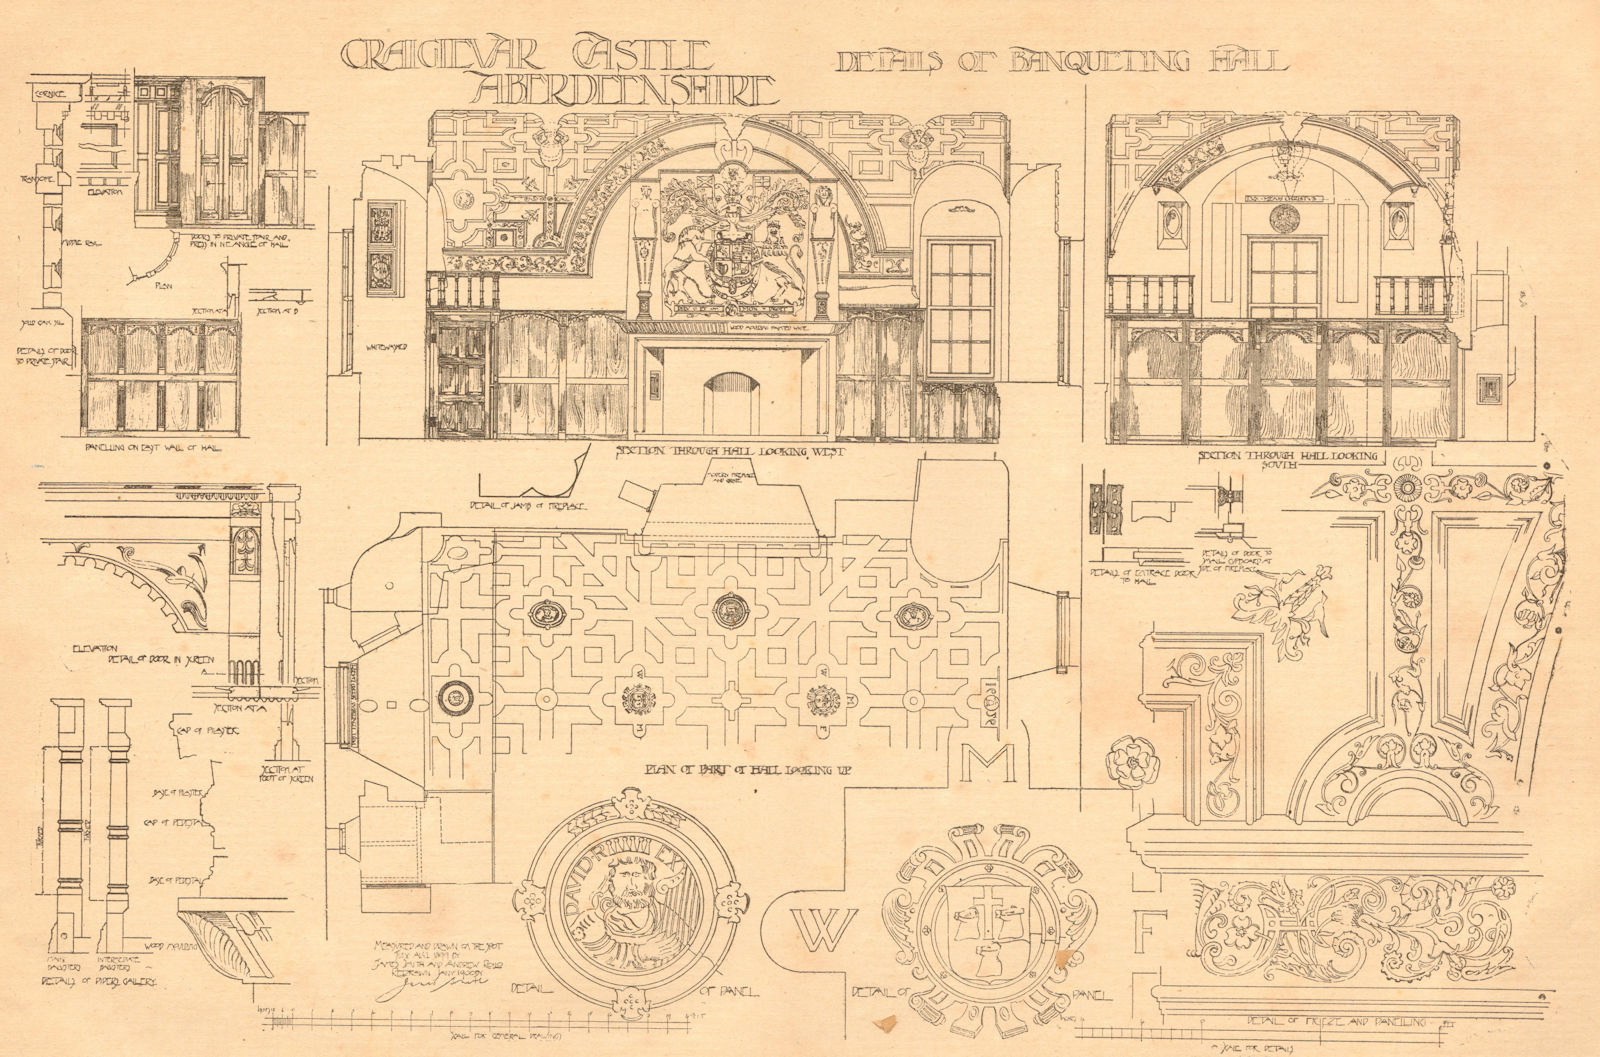 Craigievar castle, Aberdeenshire. Details of banqueting hall. Scotland 1901